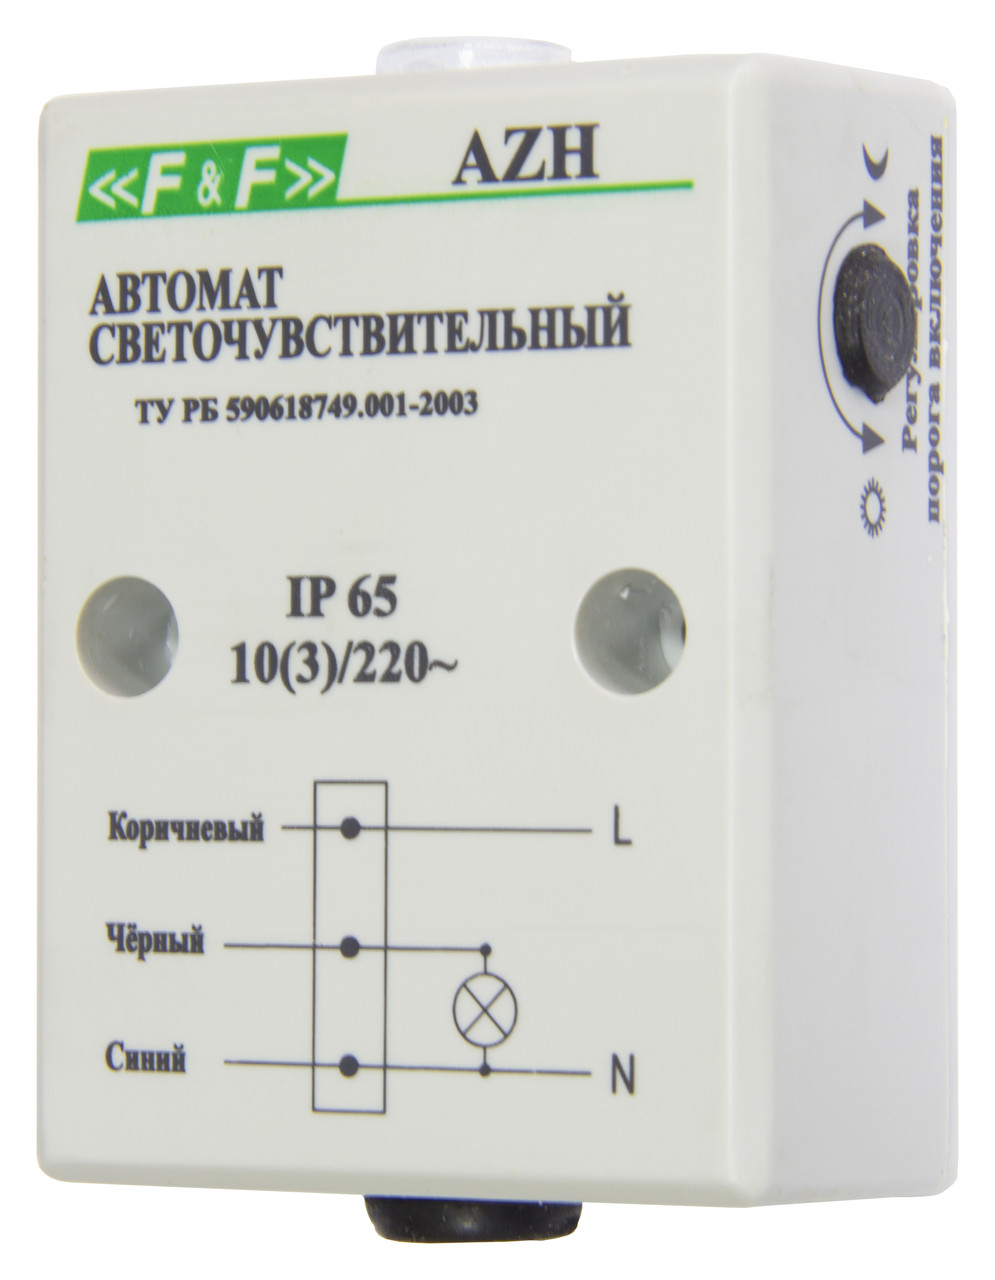 AZH-S Фотореле (автоматы светочувствительные), Встроенный фотодатчик. Максимальный ток нагрузки - 10 А.